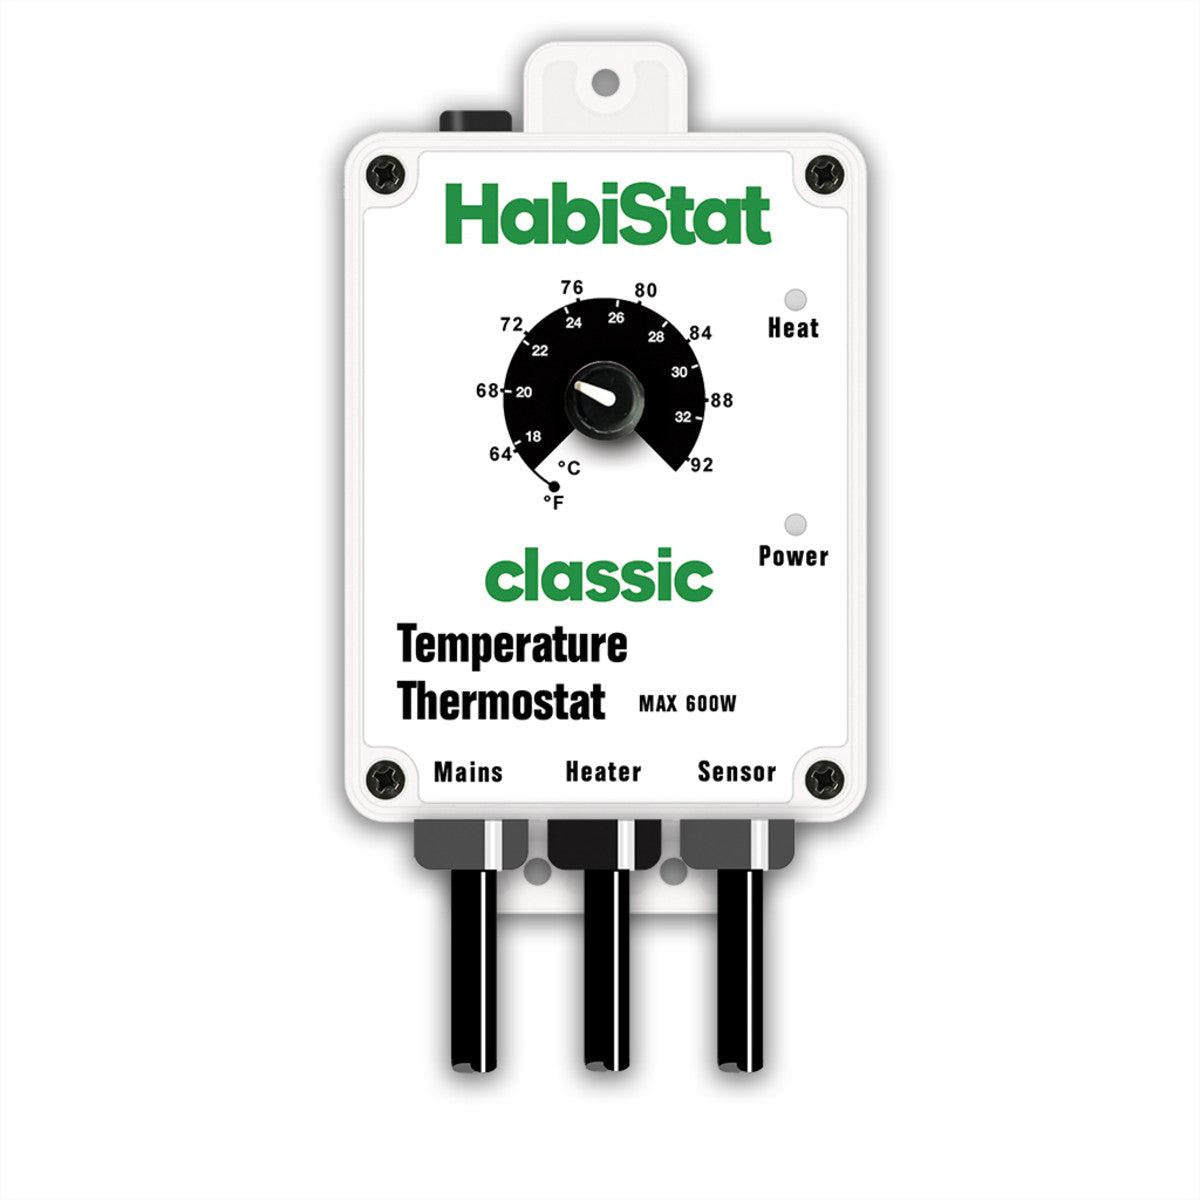 HabiStat Temperature Thermostat